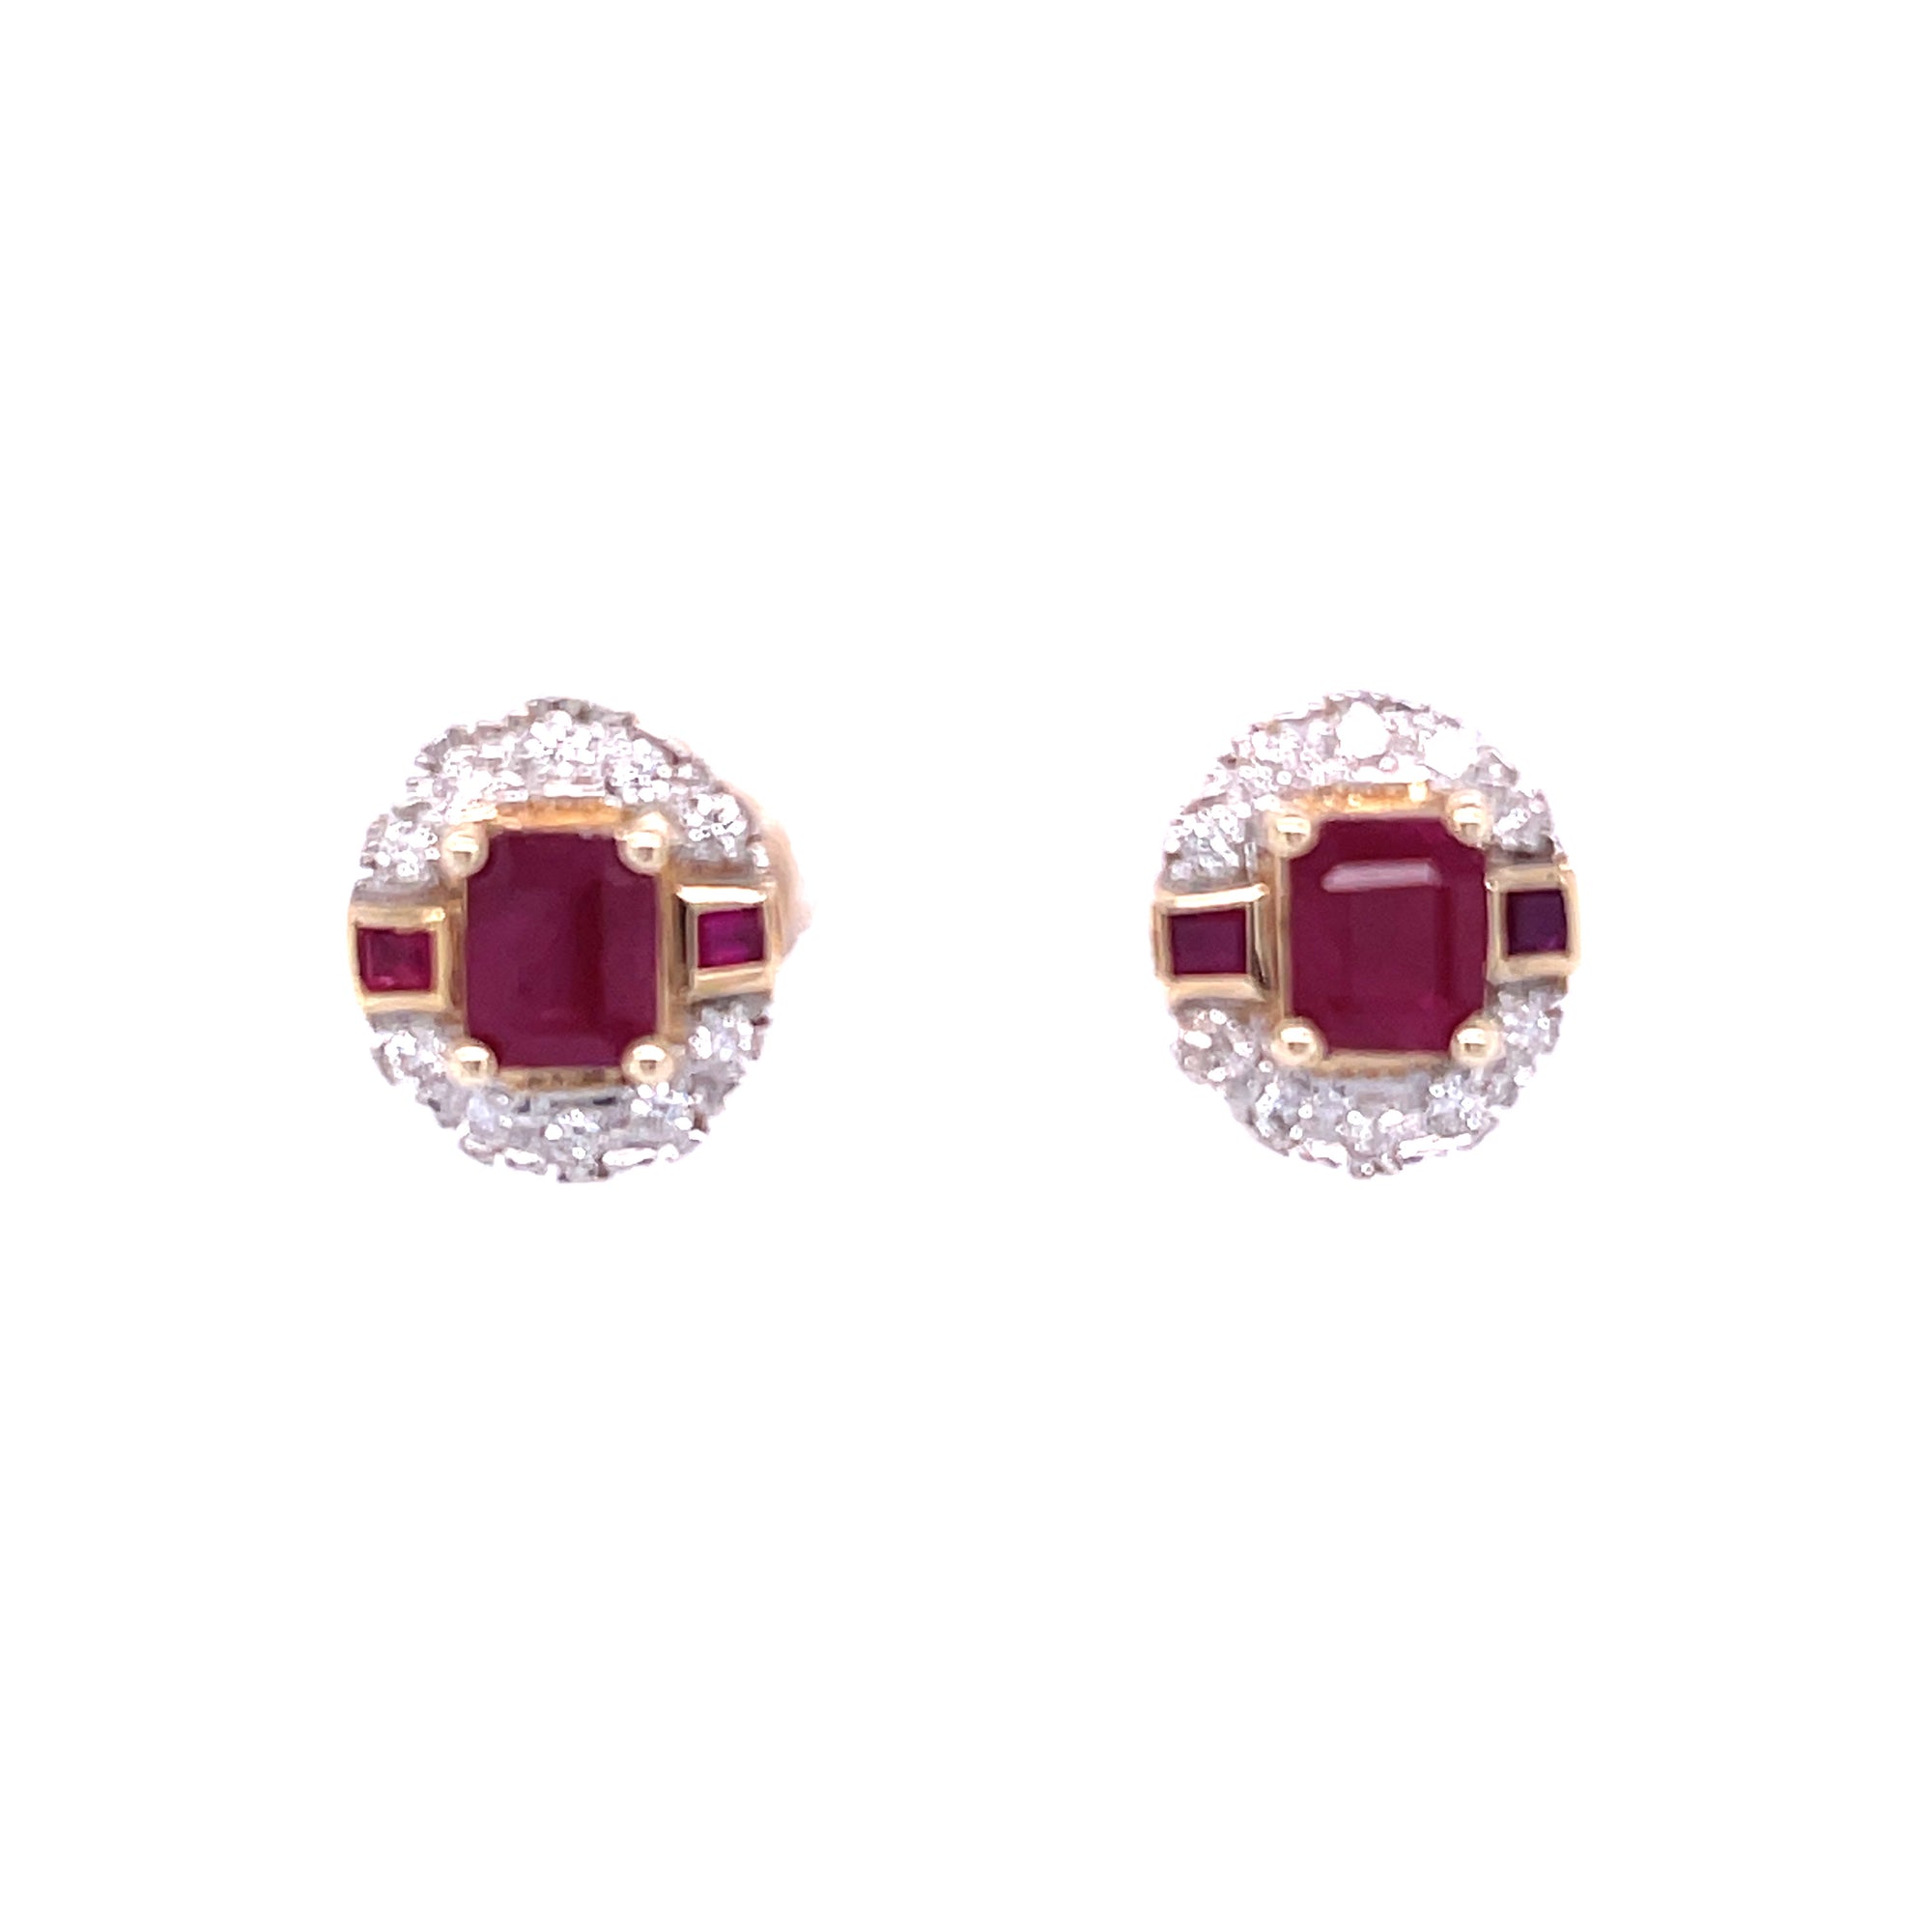 Long Ruby Earrings in Sterling Silver - Gleam Jewels